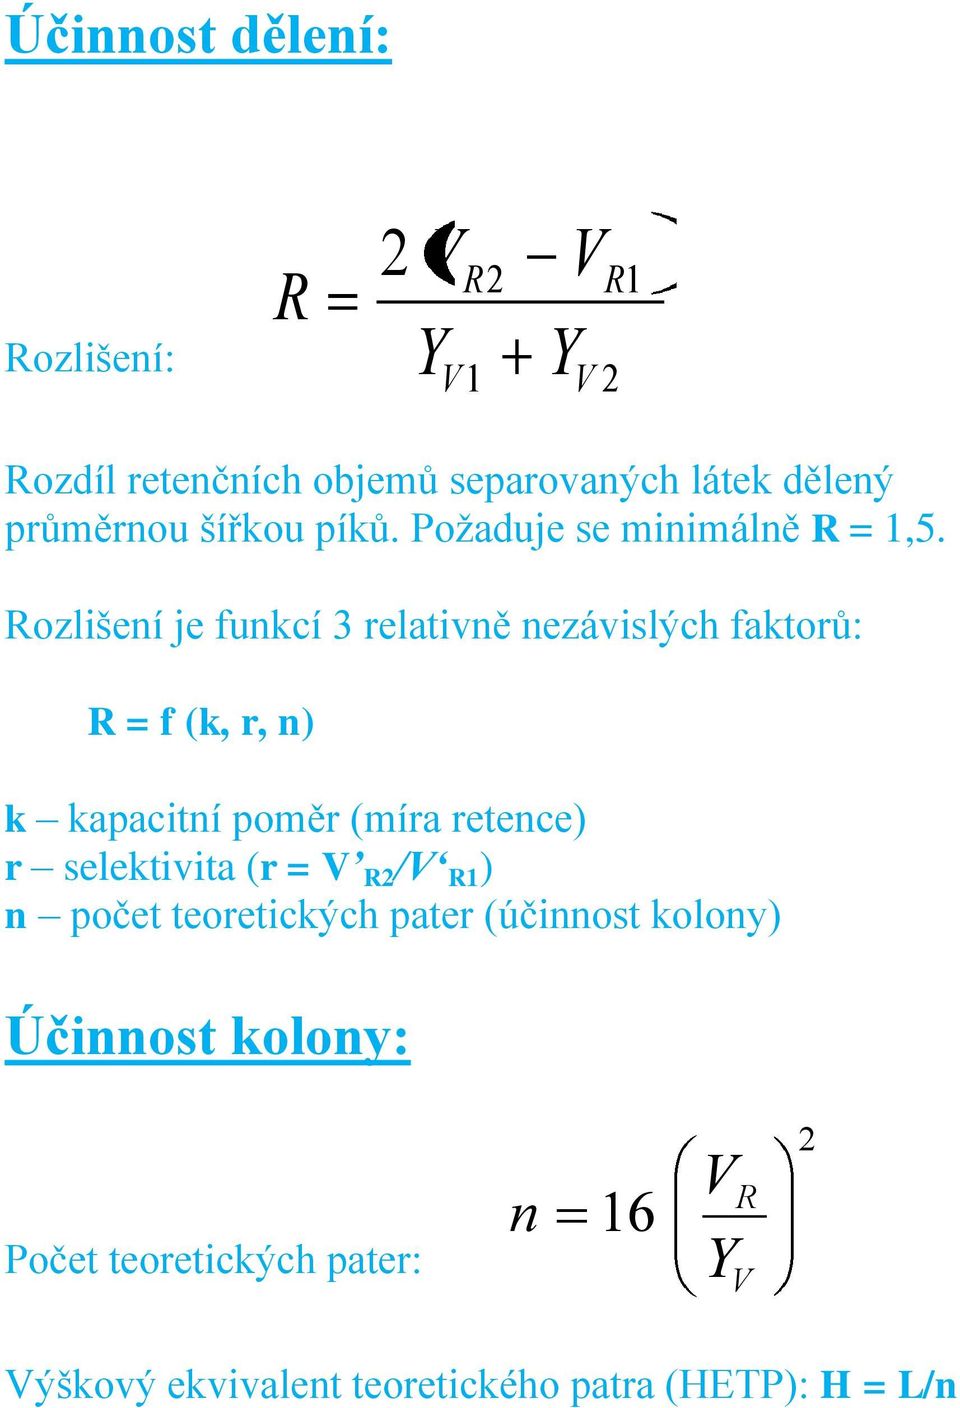 Rozlišení je funkcí 3 relativně nezávislých faktorů: R = f (k, r, n) k kapacitní poměr (míra retence) r